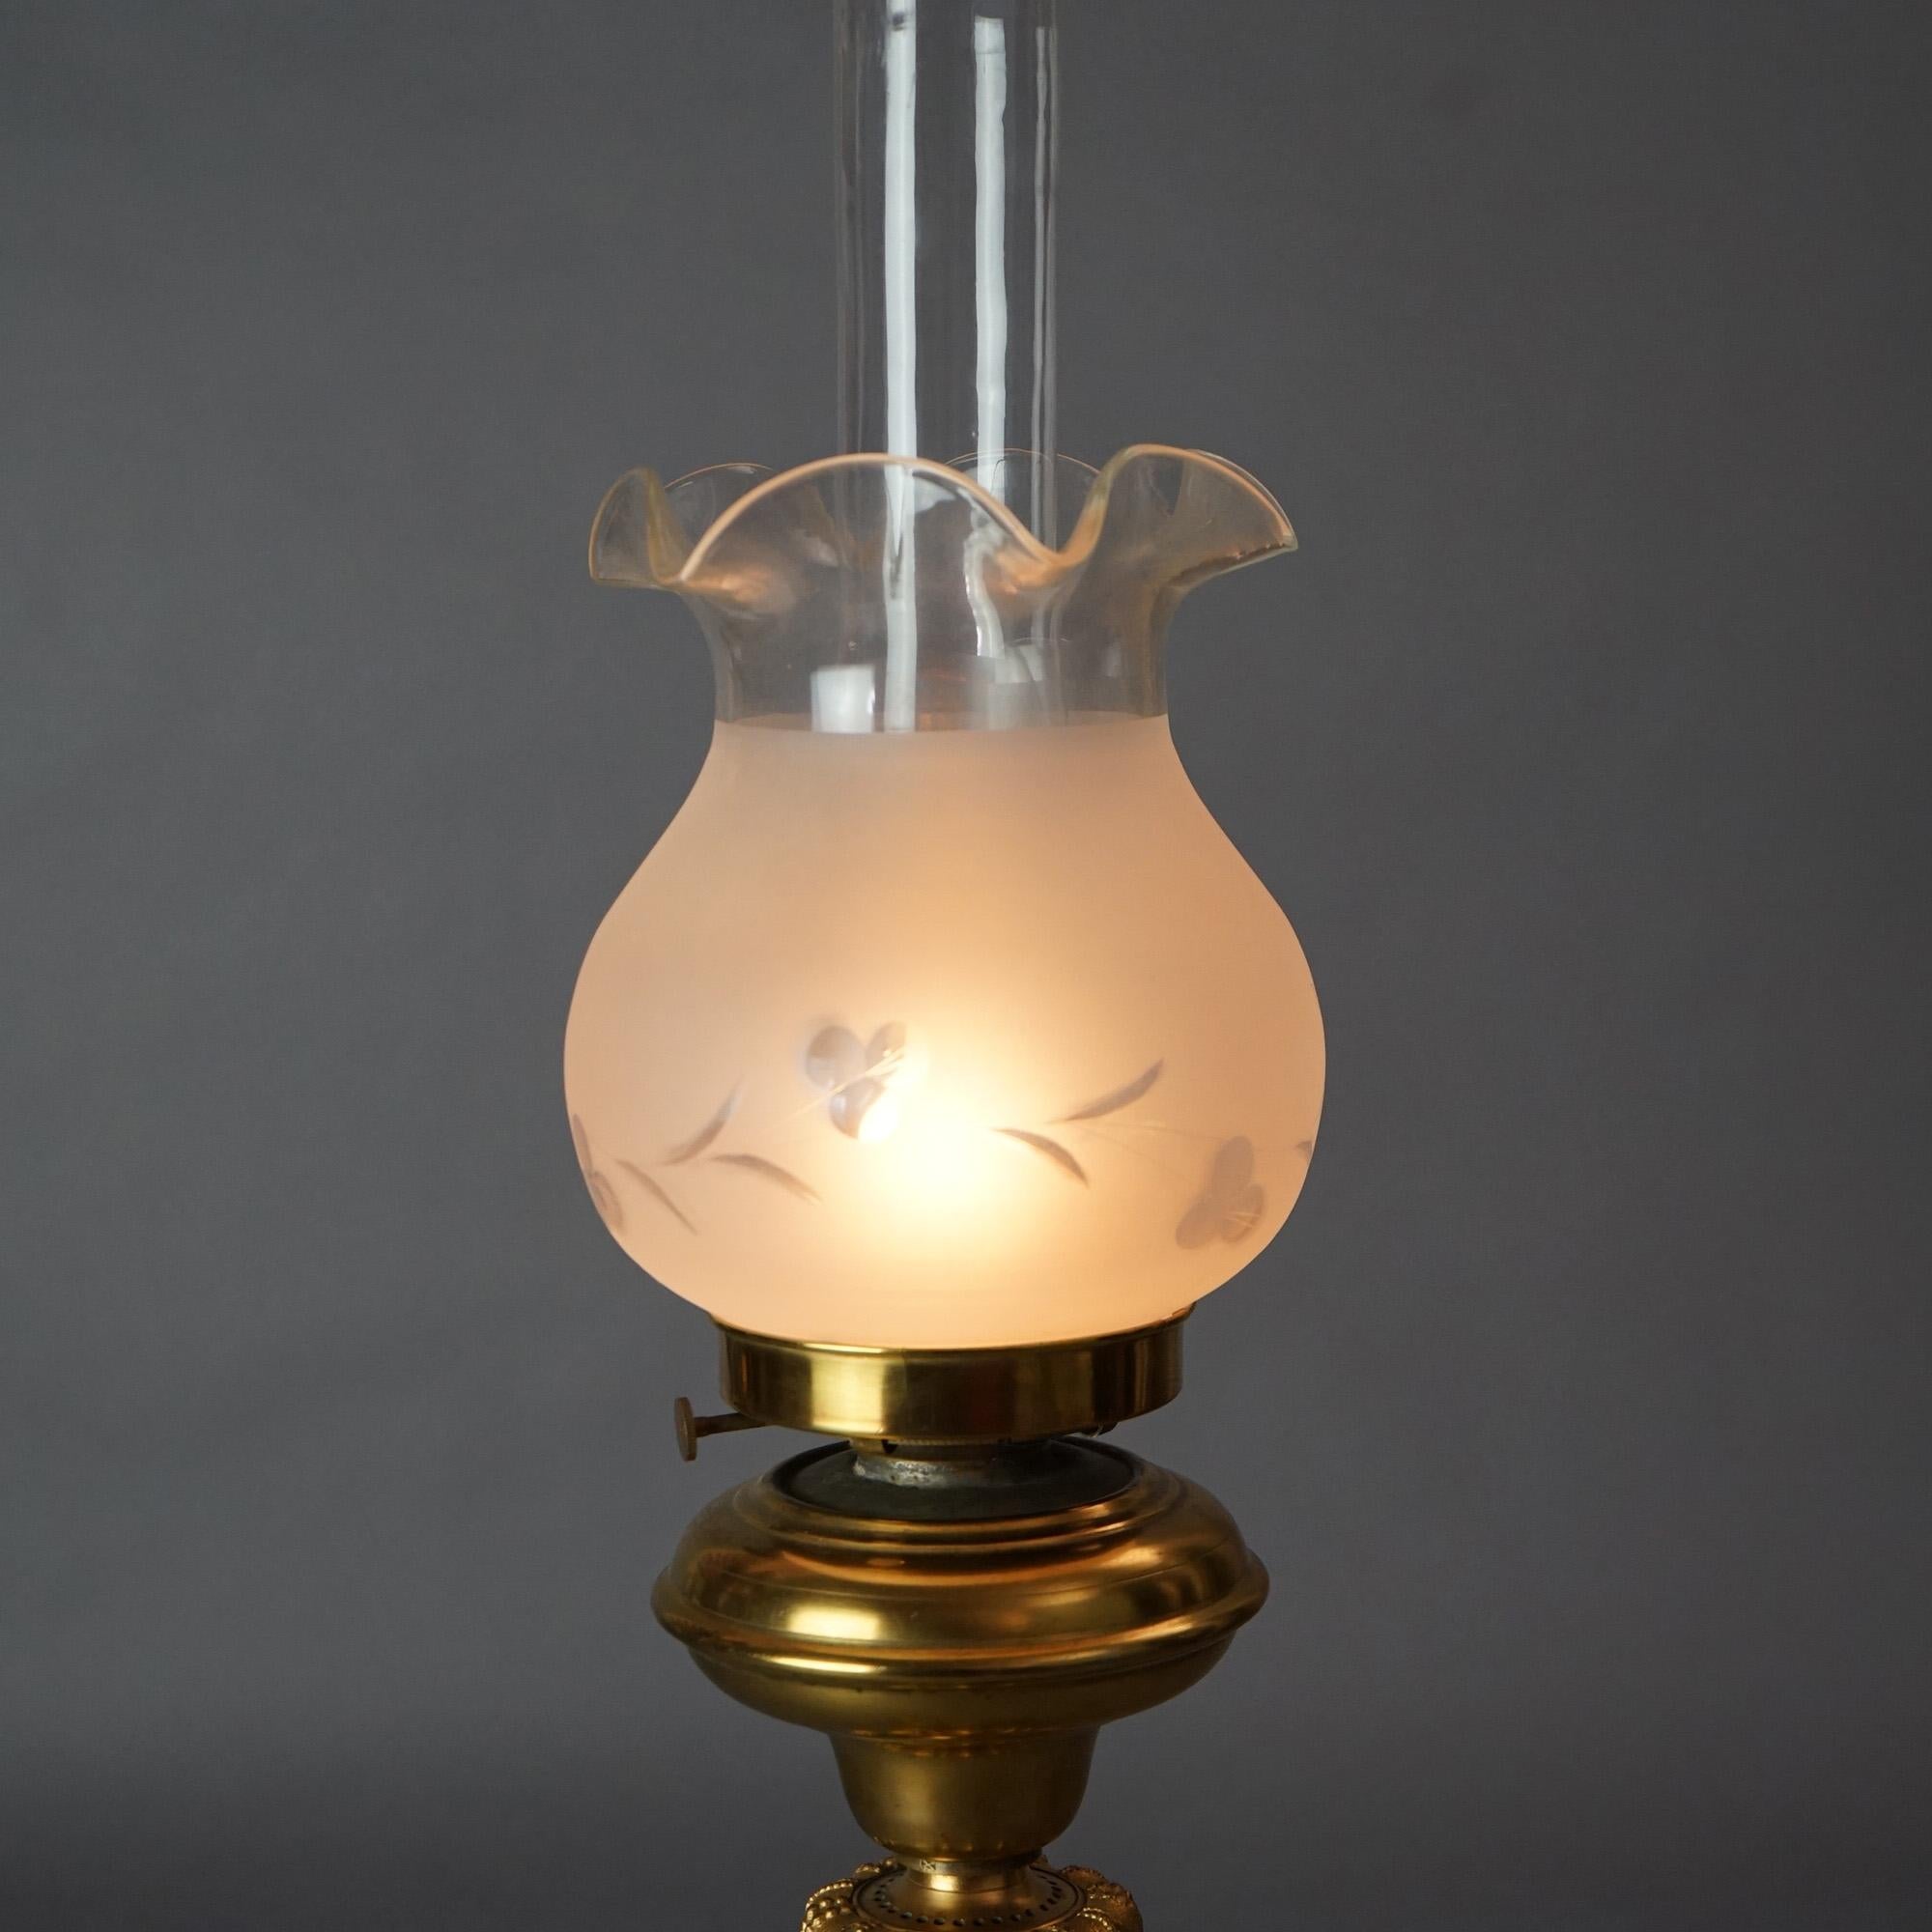 19th Century Antique Cornelius School Gilt Bronze Solar Lamp with Cut Glass Shade C1840